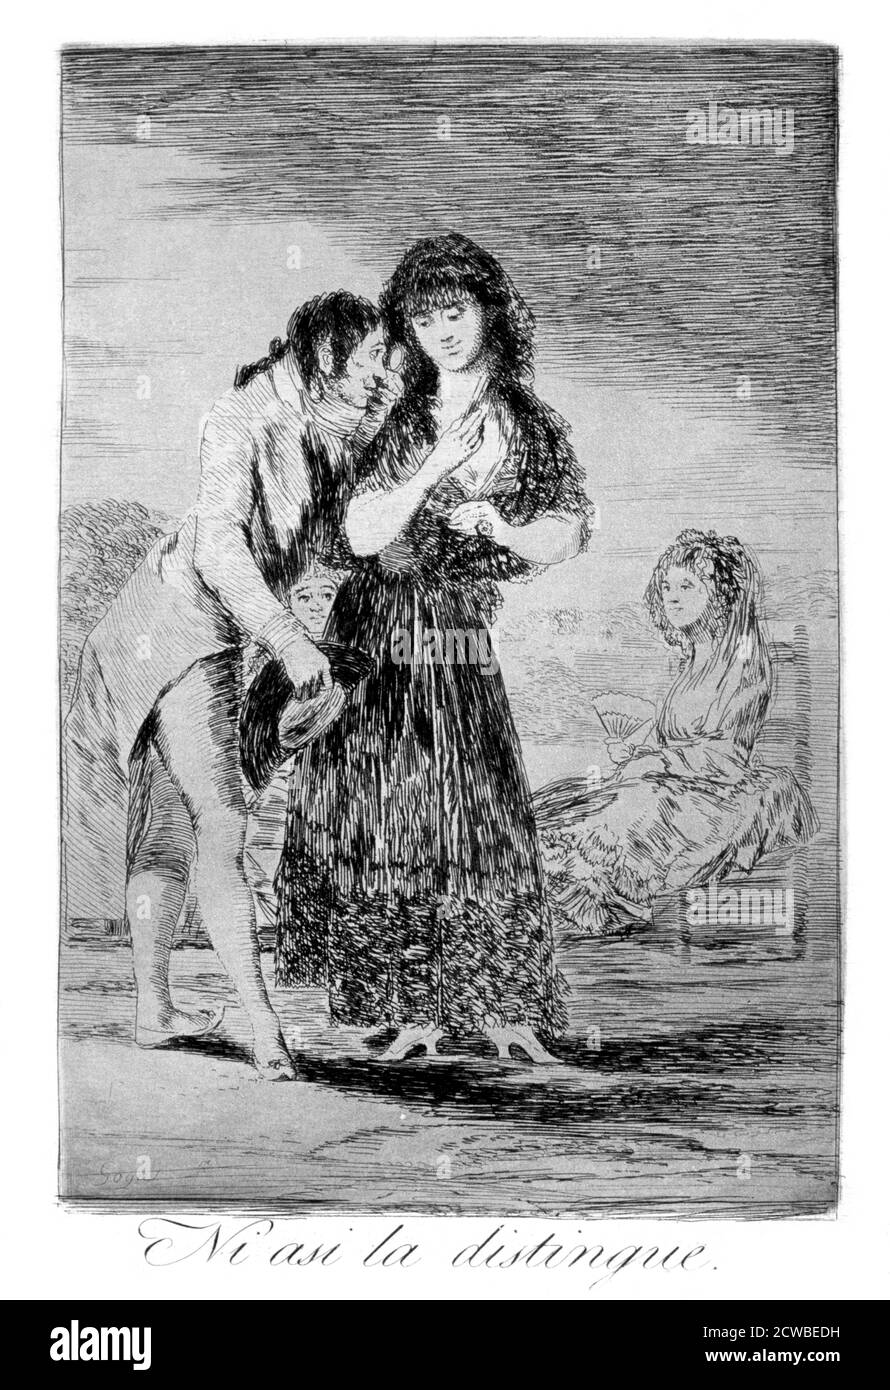 Même ainsi, il ne peut pas la faire sortir", 1799 artiste: Francisco Goya. Assiette 7 de 'Los Caprichos'. Los Caprichos est un ensemble de 80 tirages en aquatinte et gravure créés par l'artiste espagnol Francisco Goya en 1797 et 1798, et publiés comme un album en 1799. Banque D'Images